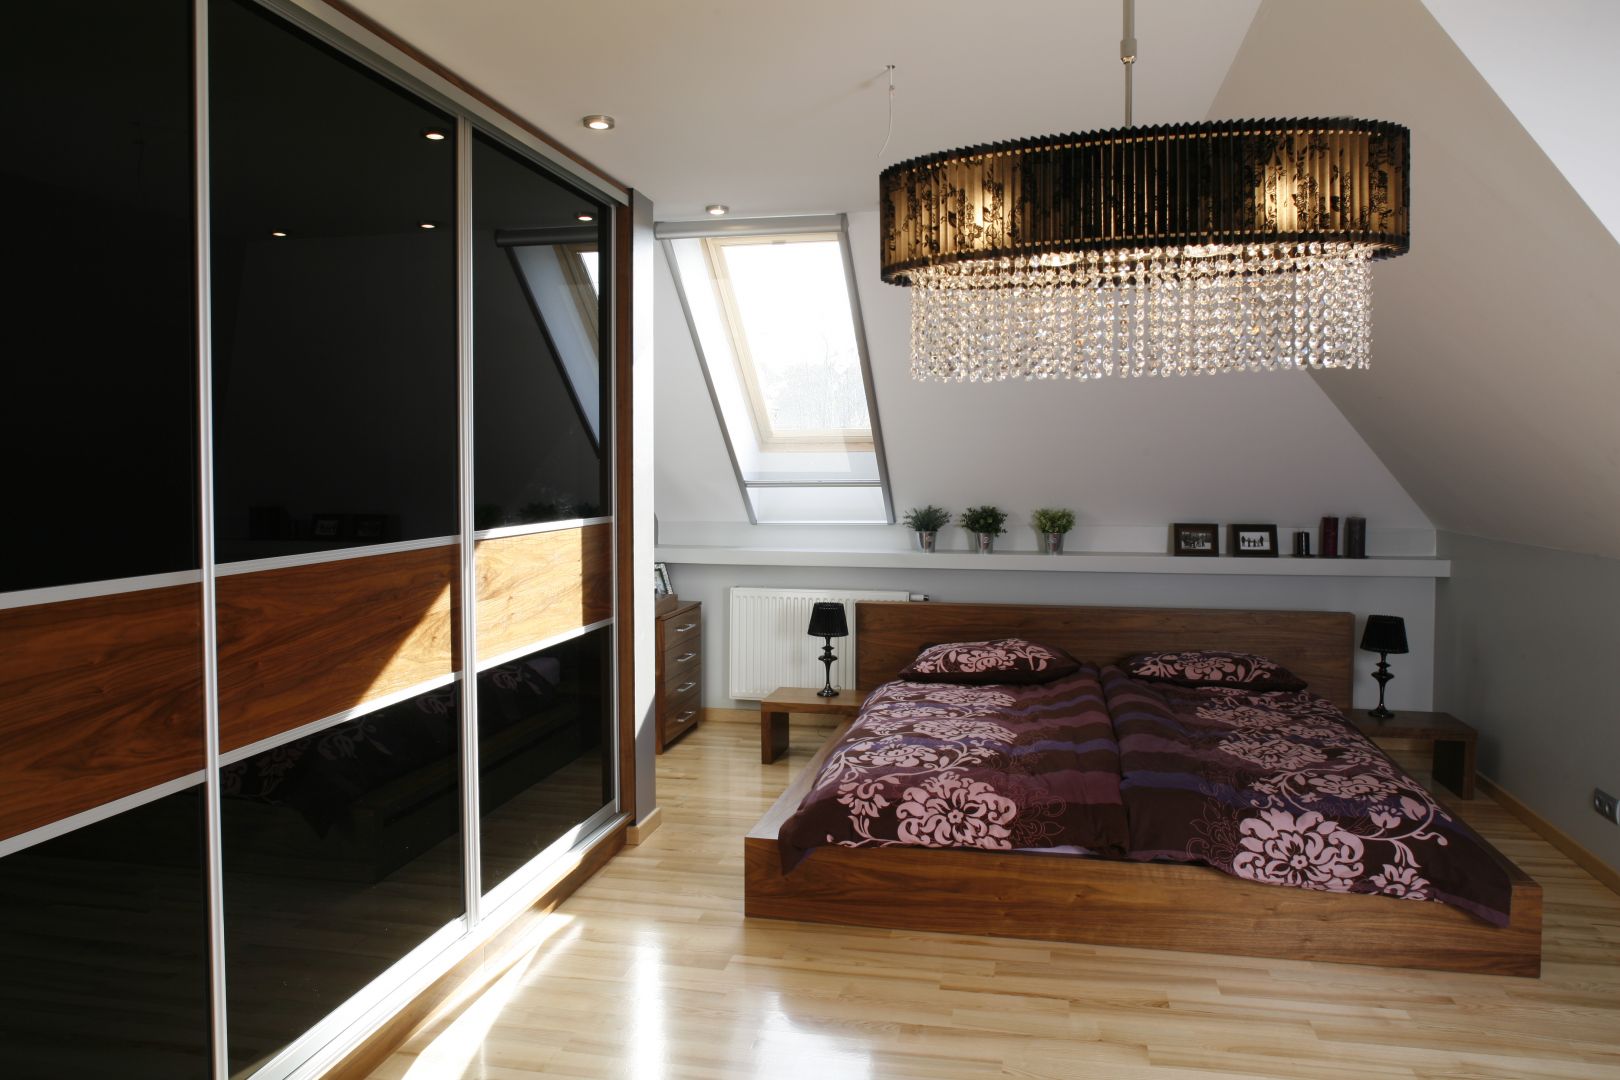 Nowoczesna sypialnia z niskim, drewnianym łóżkiem. Niewątpliwą zaletą tego rodzaju łóżek jest fakt, że nie zawłaszczają przestrzeni, a sypialnia pozostaje nowoczesna i przestronna. Projekt: Anna Gruner. Fot. Bartosz Jarosz 